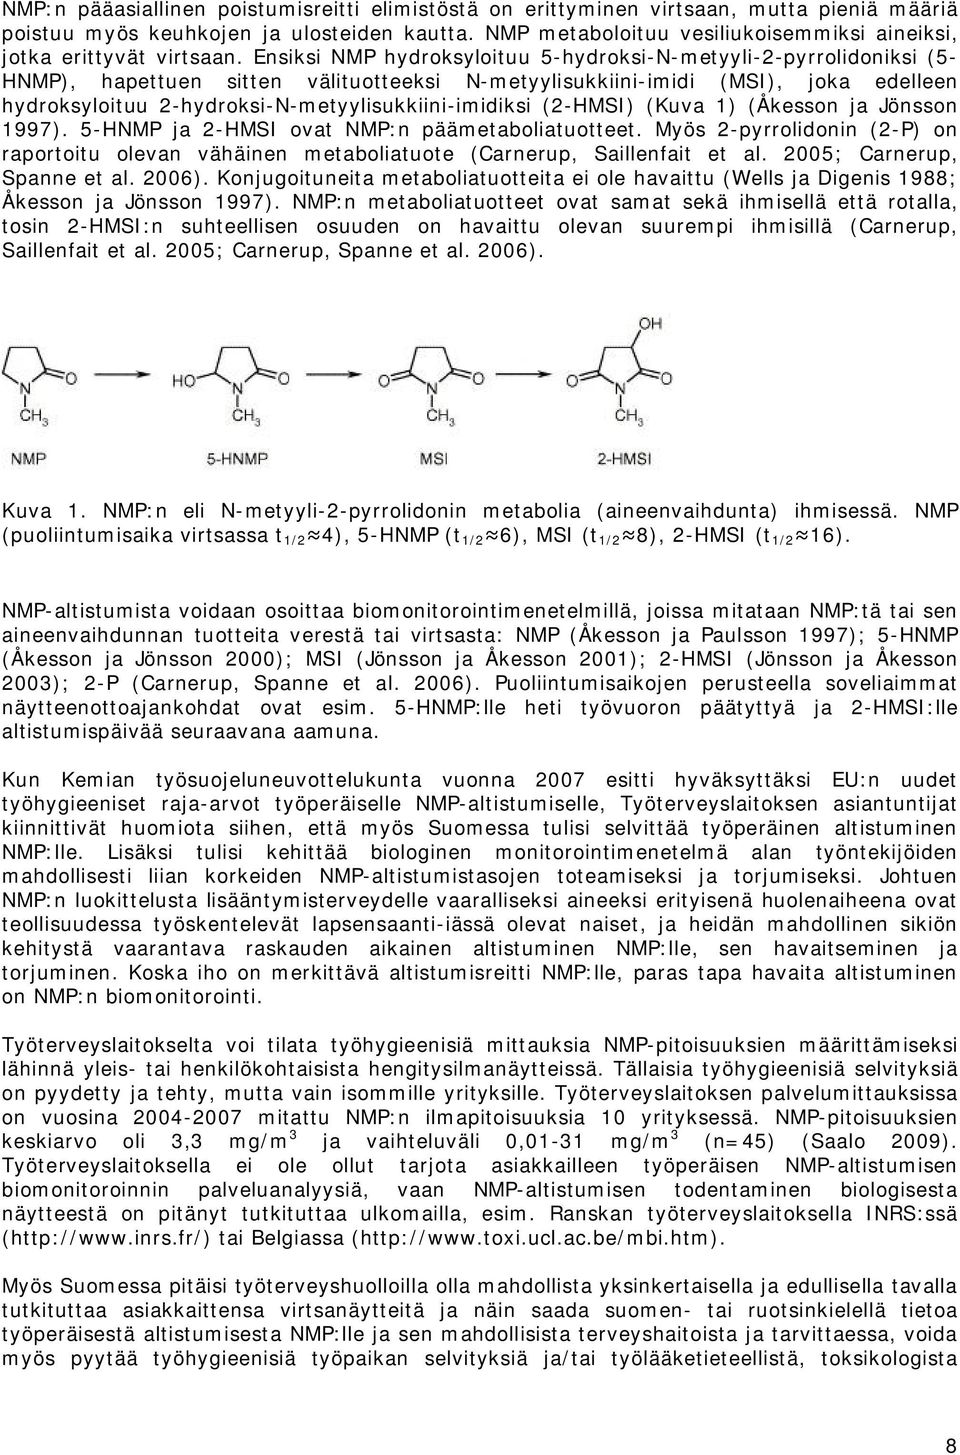 Ensiksi NMP hydroksyloituu 5-hydroksi-N-metyyli-2-pyrrolidoniksi (5- HNMP), hapettuen sitten välituotteeksi N-metyylisukkiini-imidi (MSI), joka edelleen hydroksyloituu